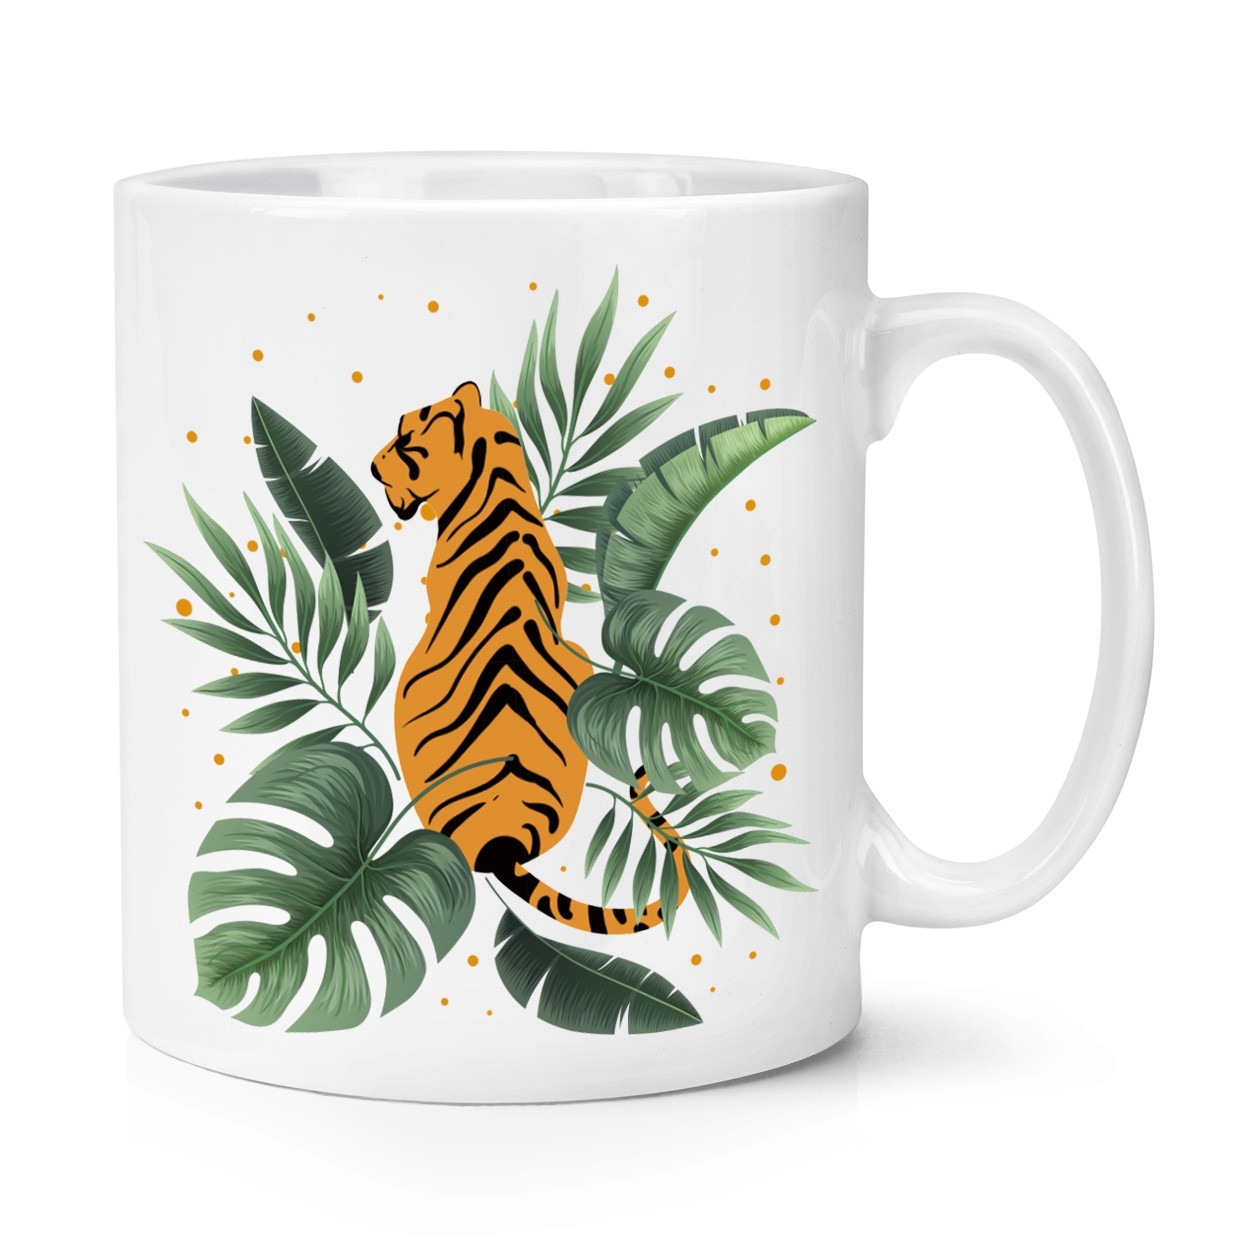 Tiger Jungle Tropical Theme Mug 10oz Mug Cup